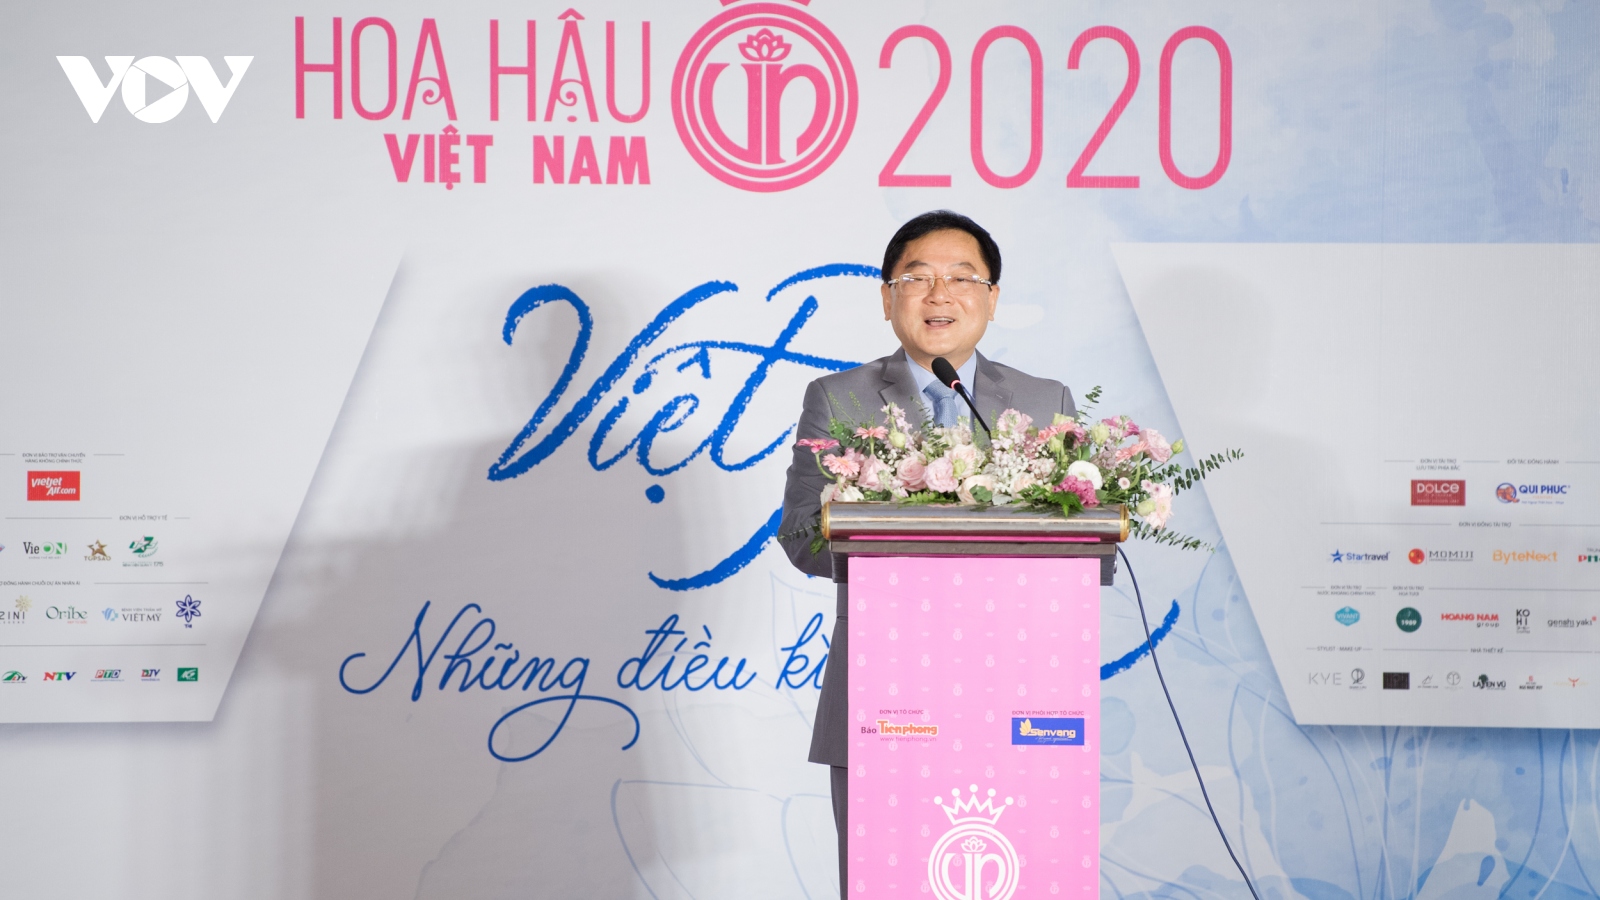 Chất lượng thí sinh dự thi Hoa hậu Việt Nam 2020 tăng rõ rệt